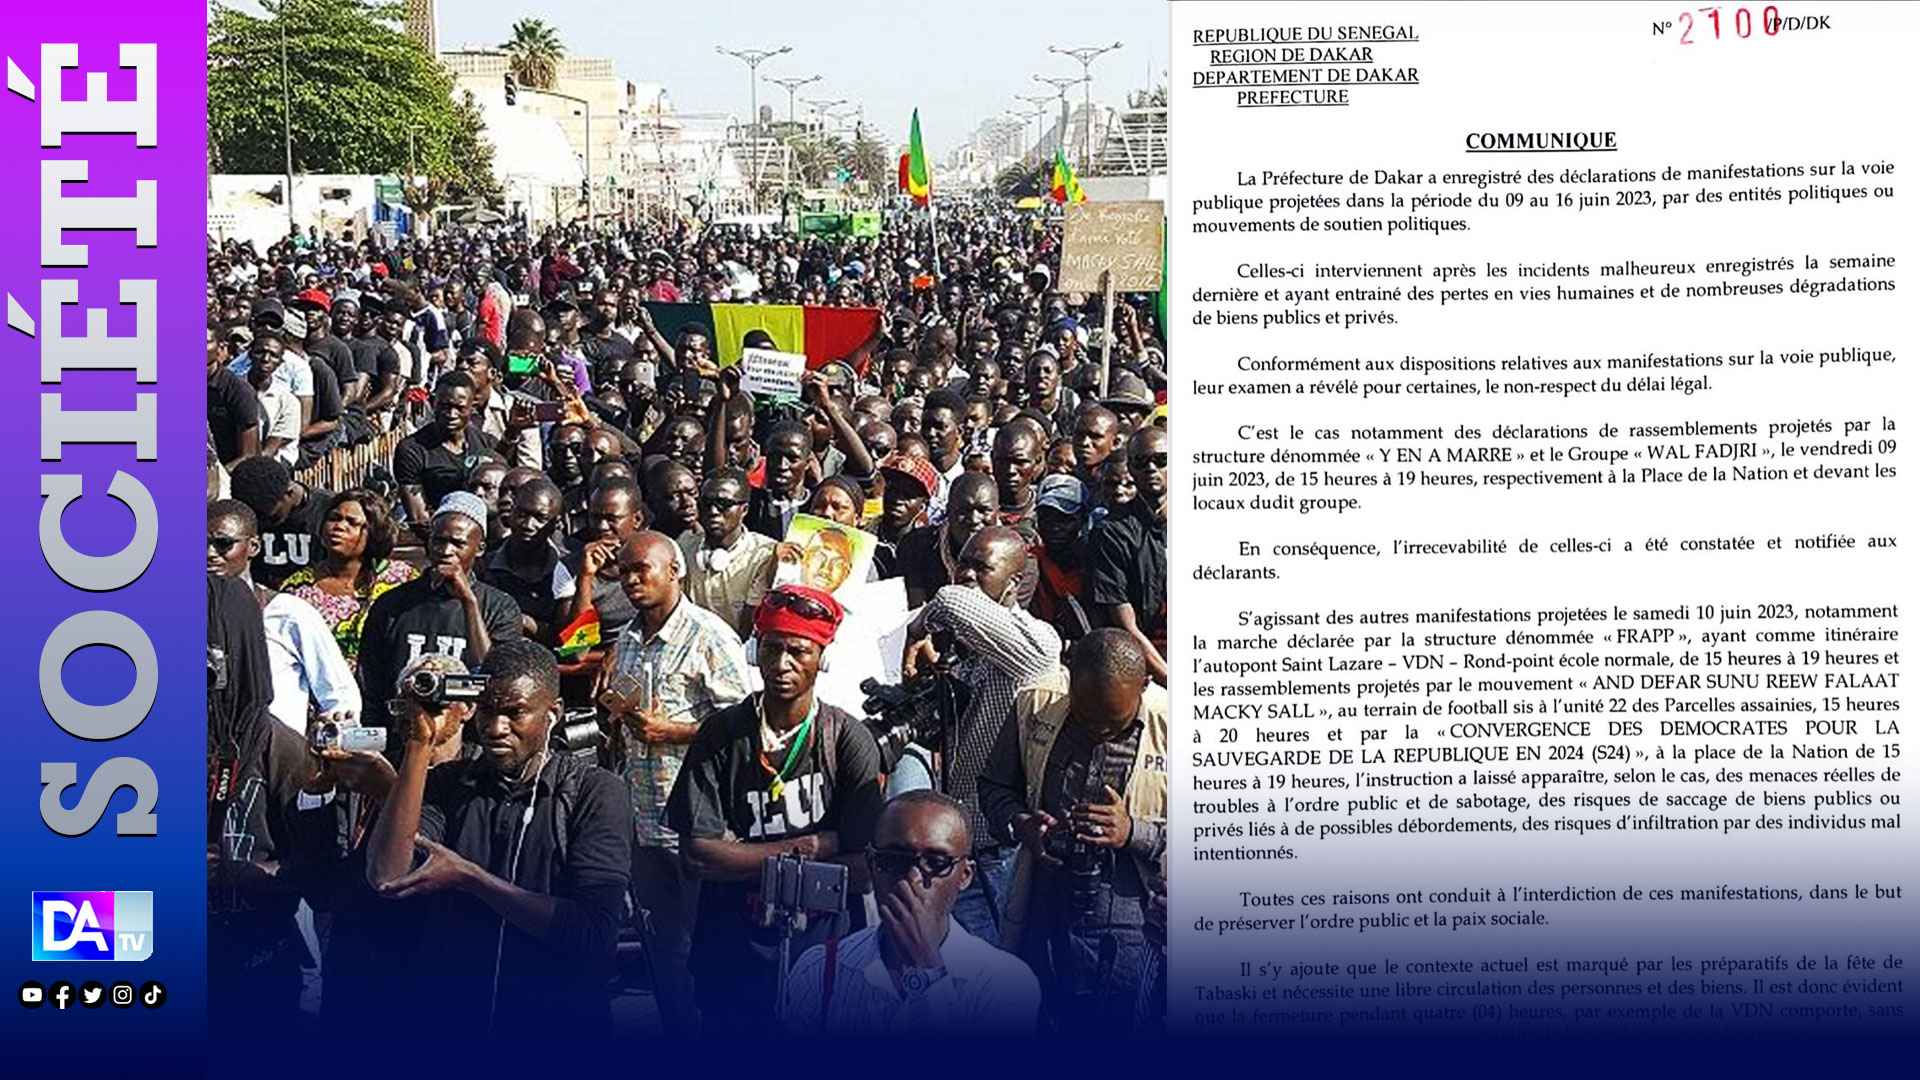 Demandes d'autorisations de manifestation à Dakar : Le préfet brandit l’interdiction et parle d’un contexte inapproprié